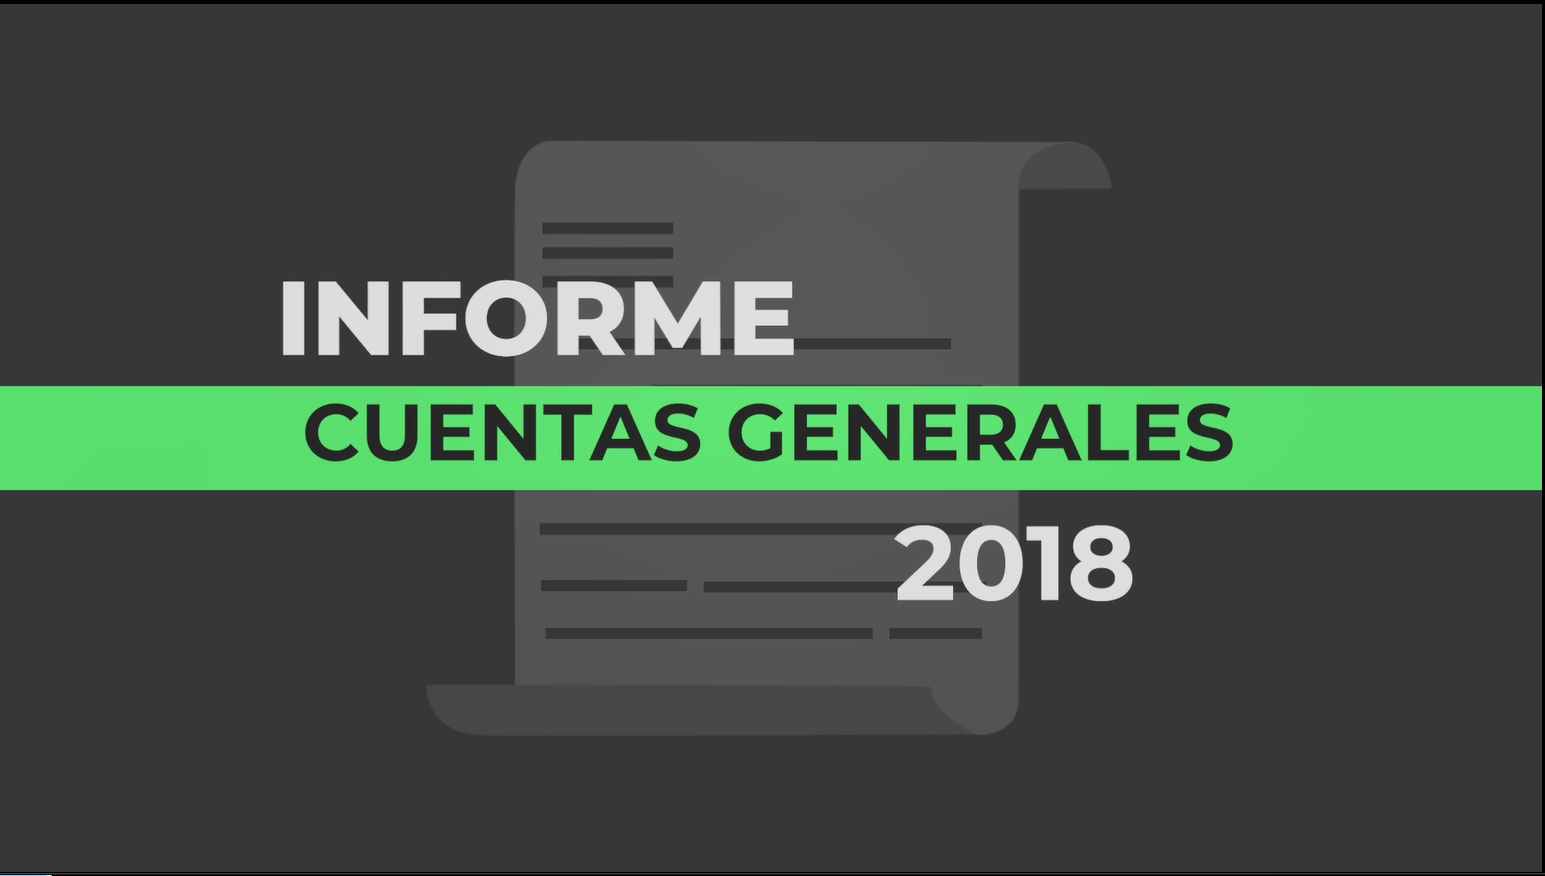 Informe Cuentas generales 2018 (video)